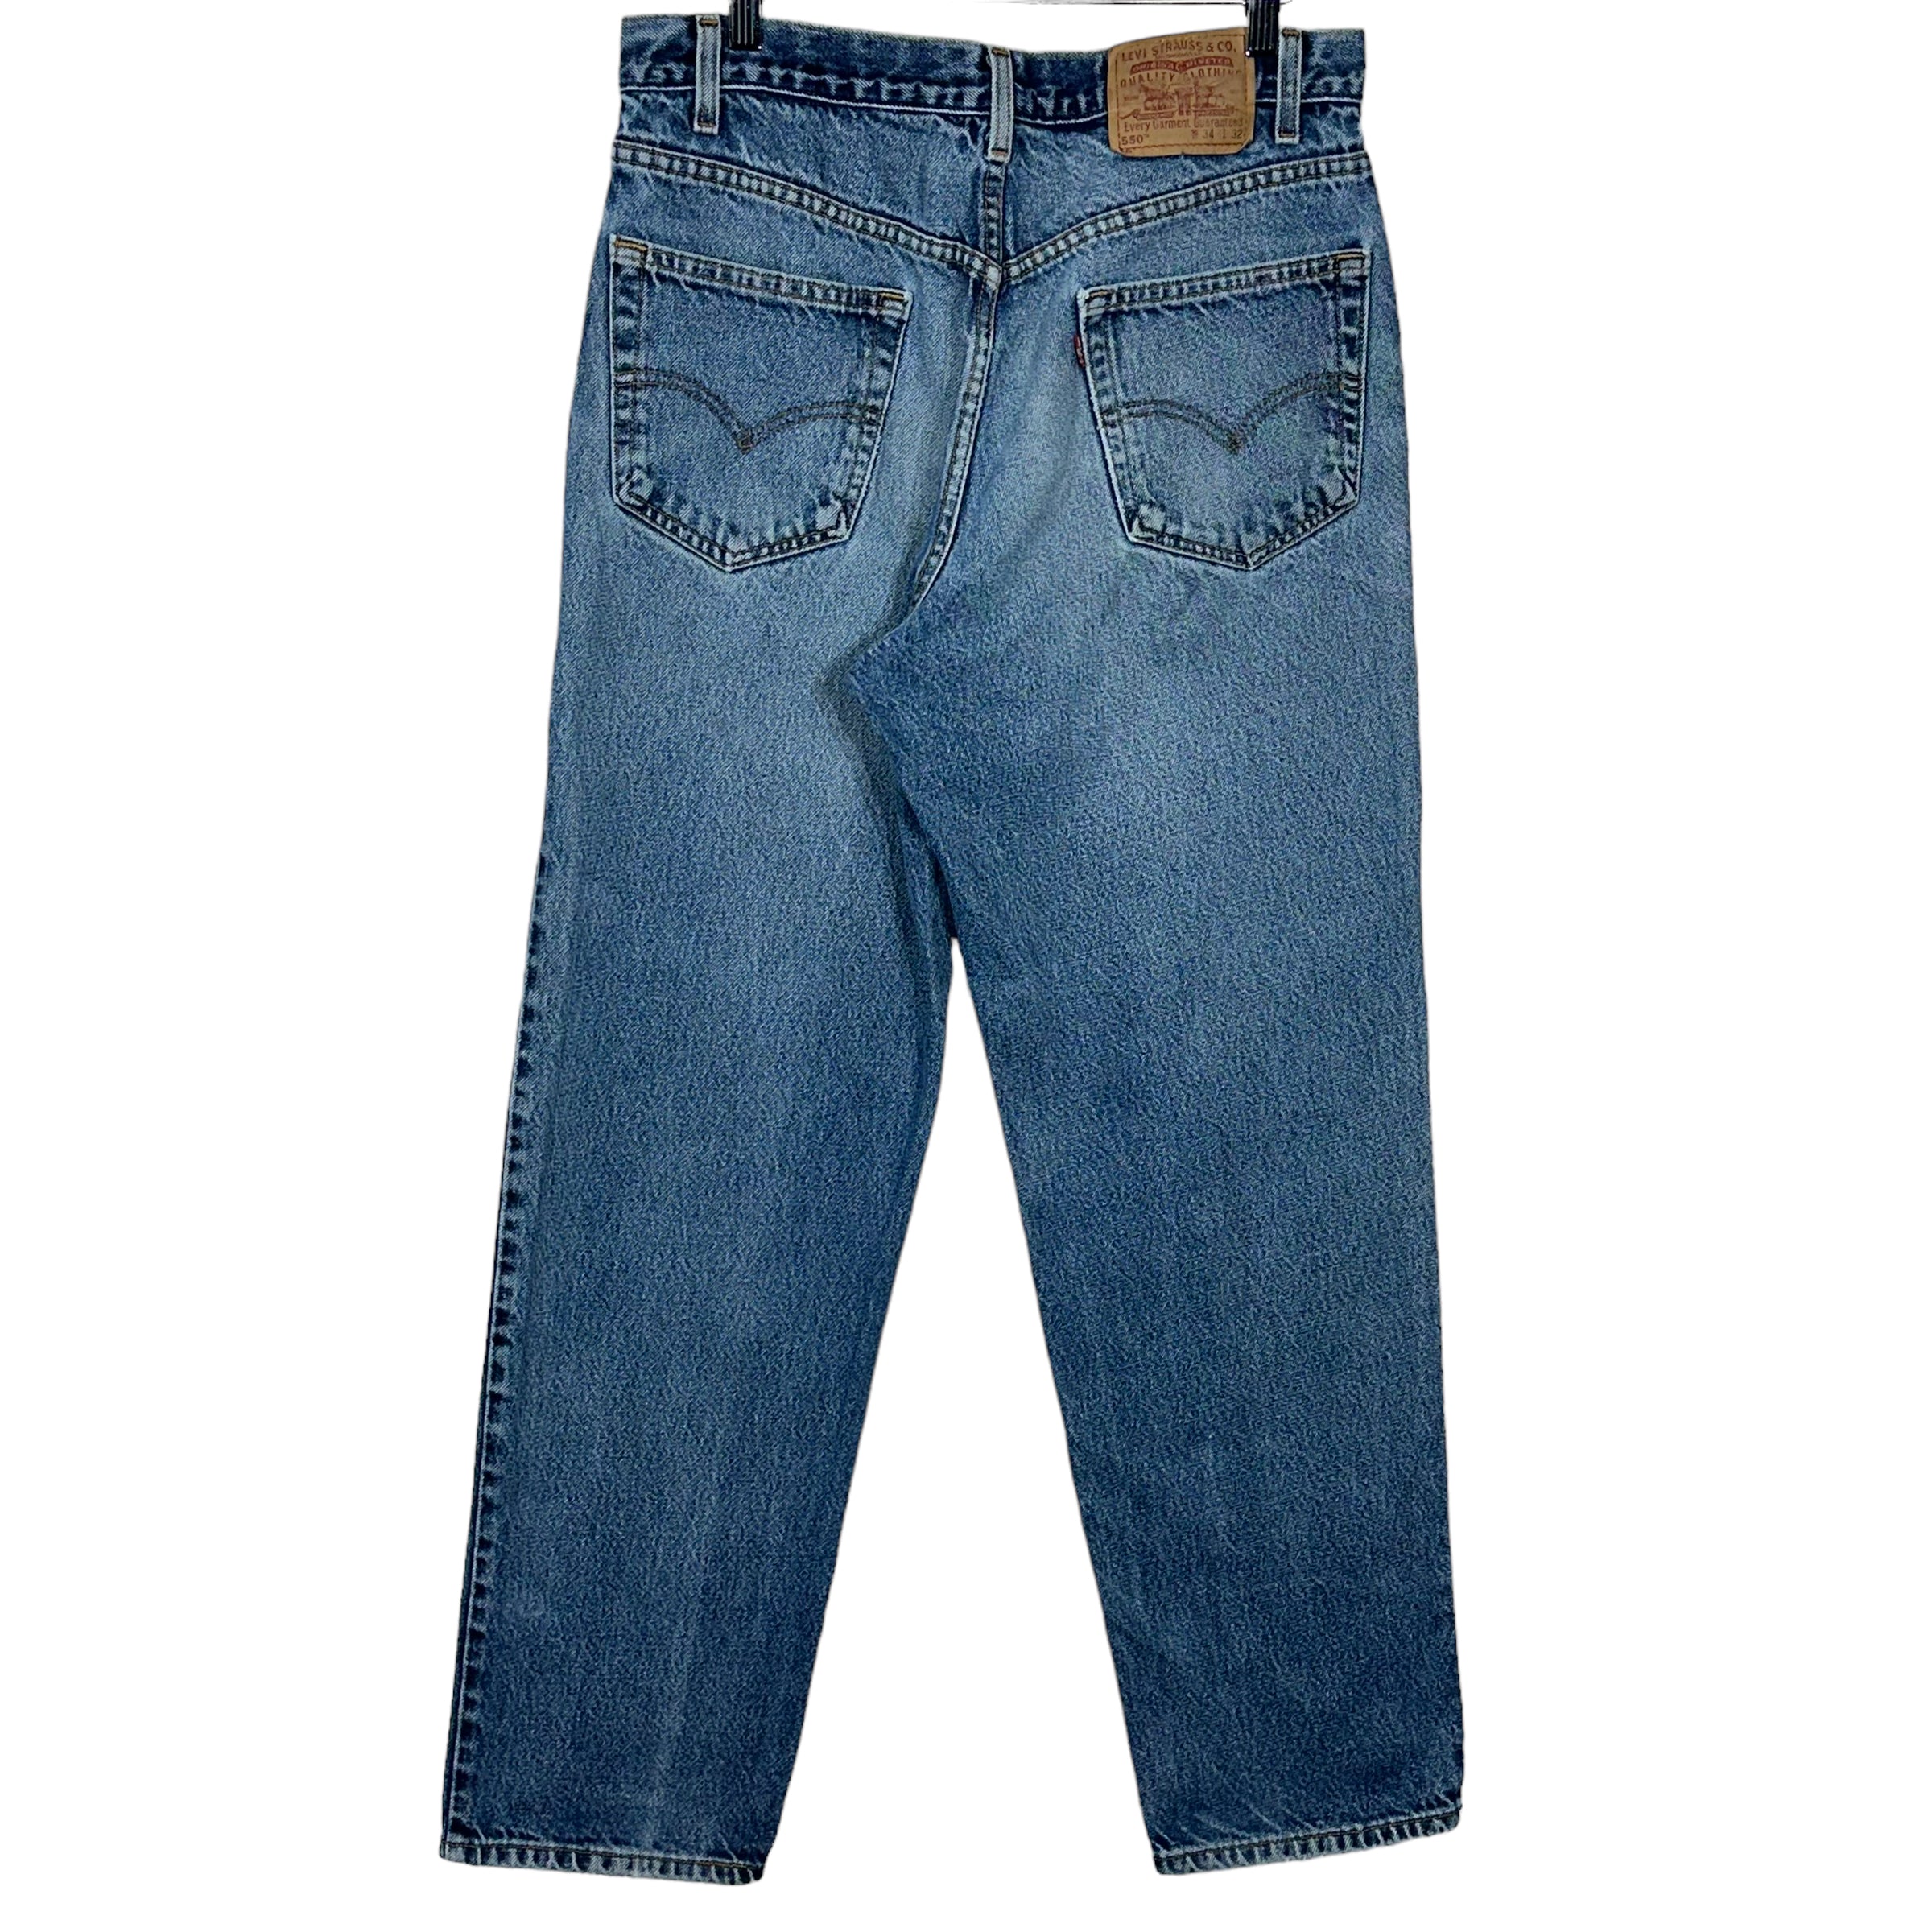 Vintage Levi's 550 Denim Jeans